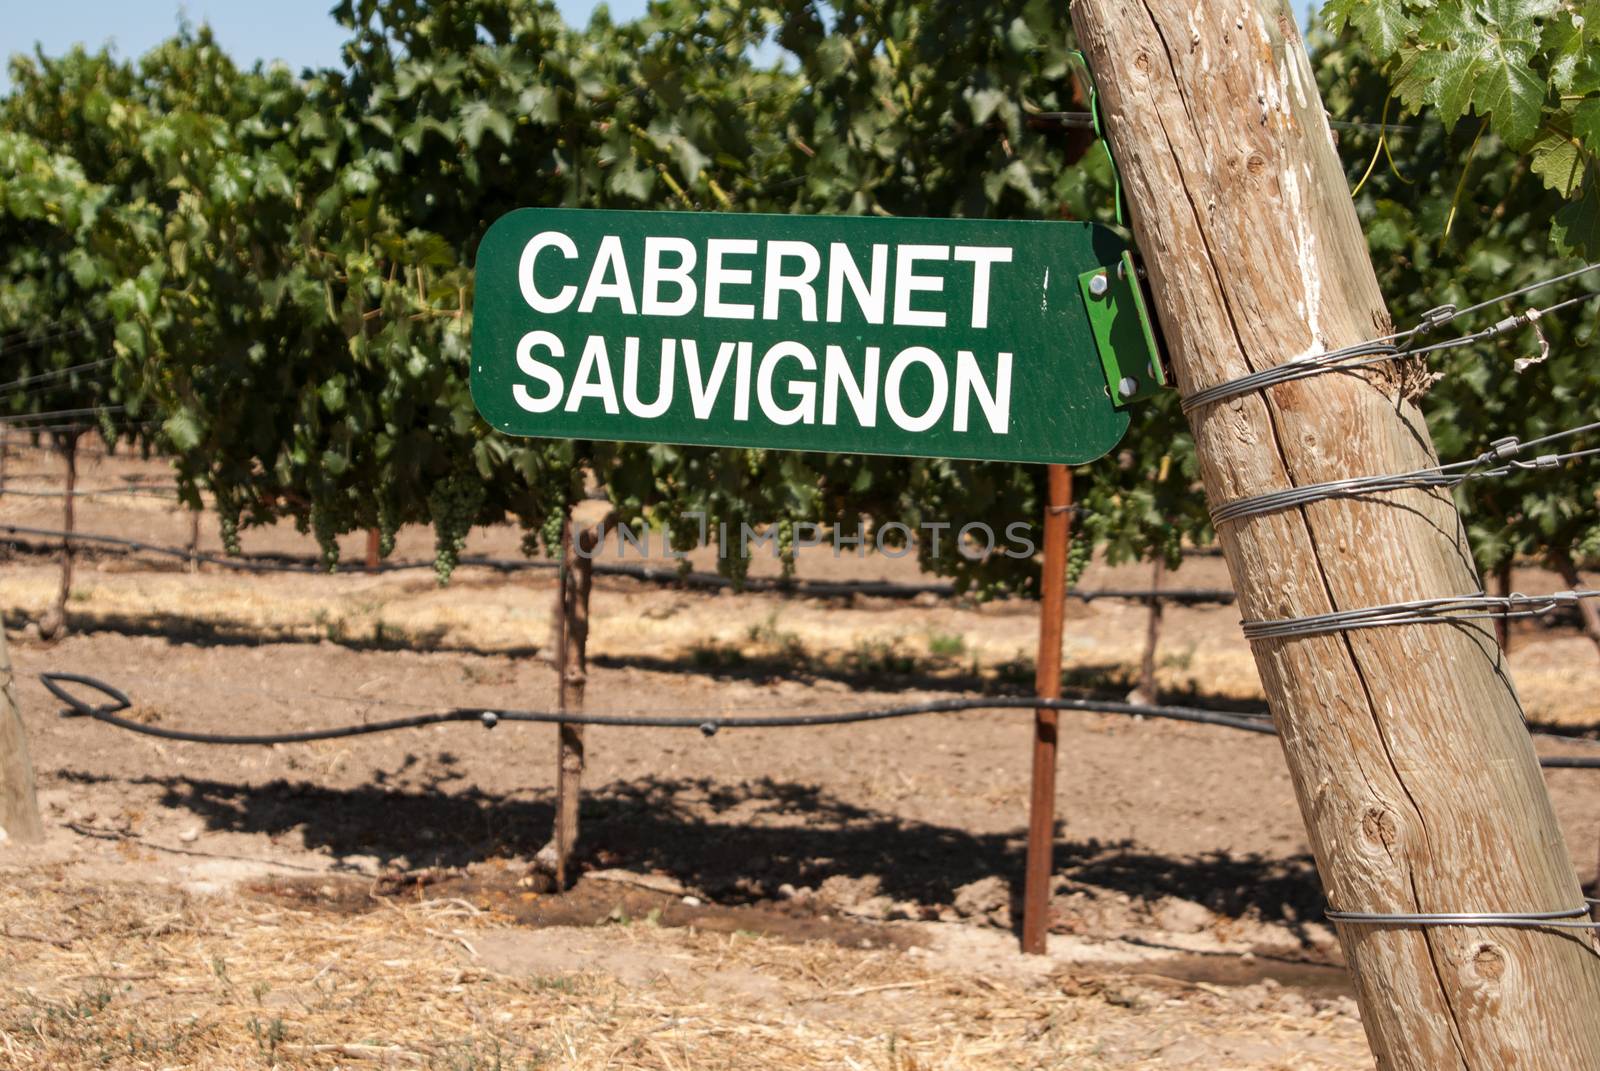 Cabernet Sauvignon grapevine sign in California